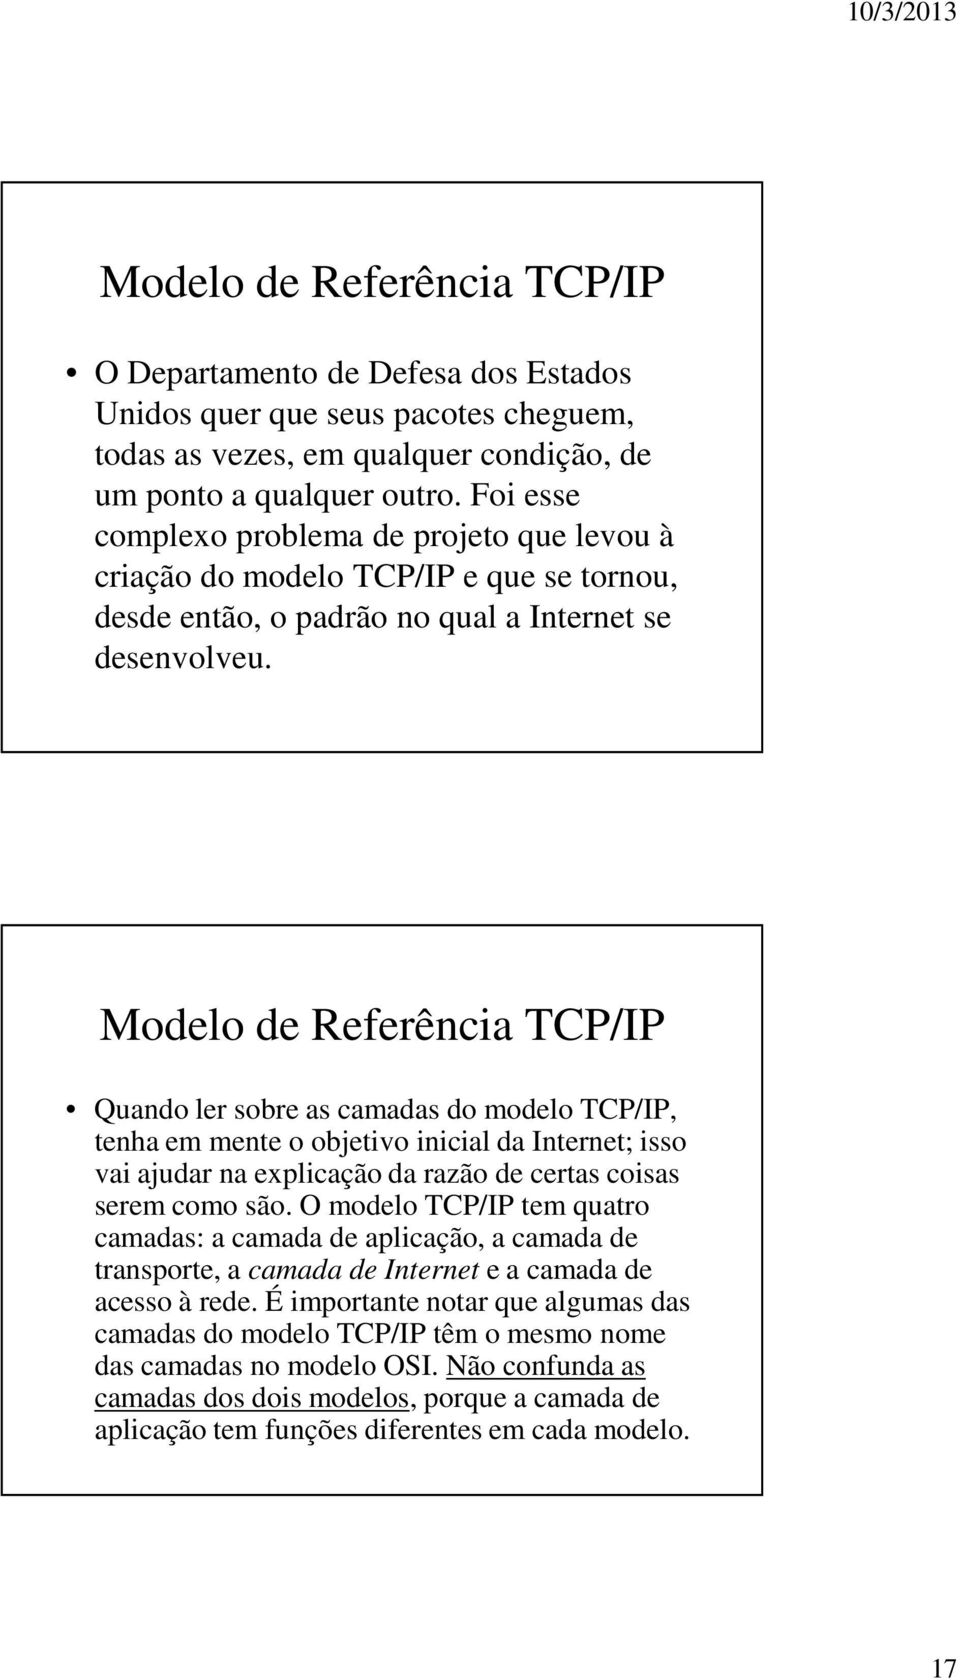 Modelo de Referência TCP/IP Quando ler sobre as camadas do modelo TCP/IP, tenha em mente o objetivo inicial da Internet; isso vai ajudar na explicação da razão de certas coisas serem como são.